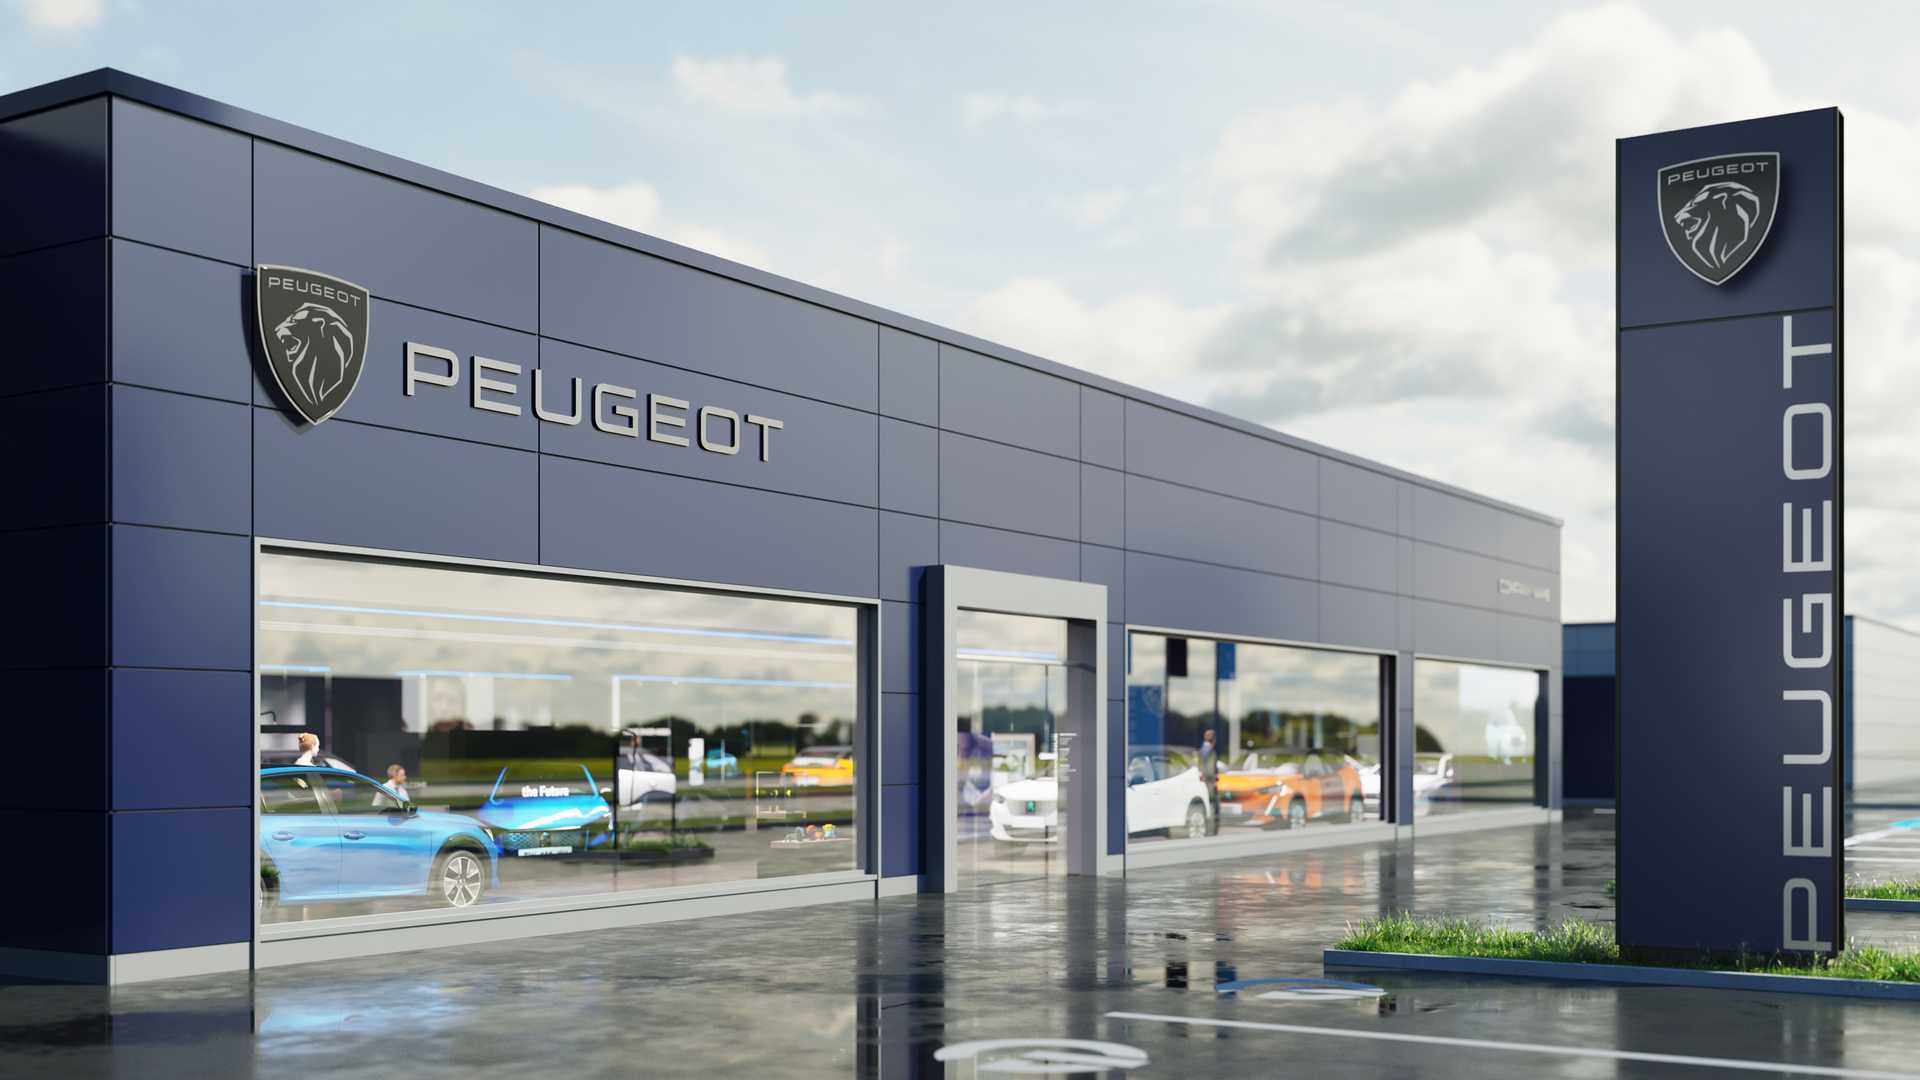 Peugeot yeni logosunu tanıttı! İşte yeni logoyla gelecek ilk model